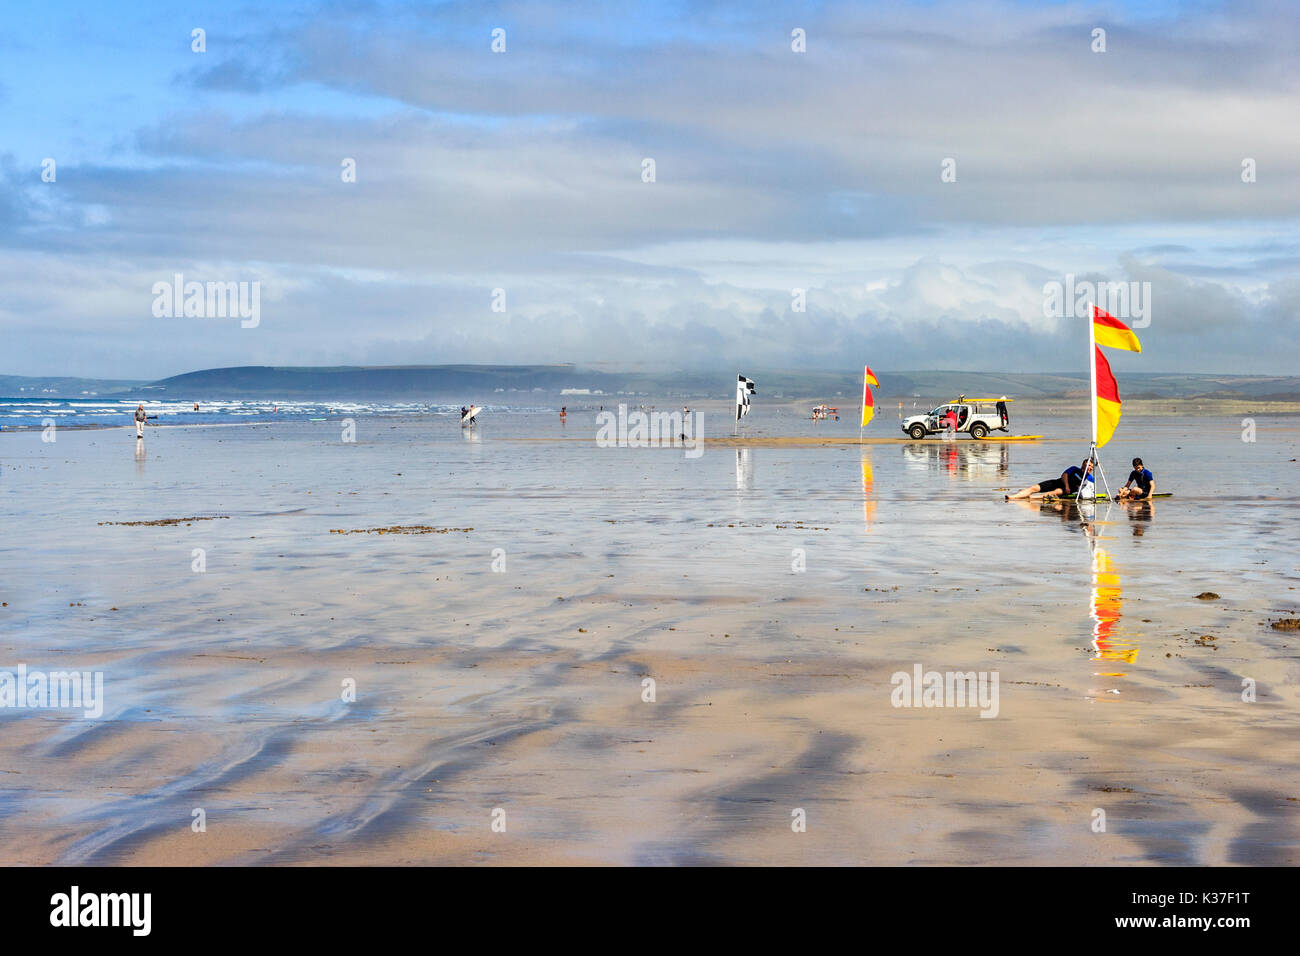 Drapeaux d'avertissement rouges et jaunes, les surfers et sauveteur RNLI véhicule sur la plage de sable à marée basse, Westward Ho !, Devon, England, UK Banque D'Images